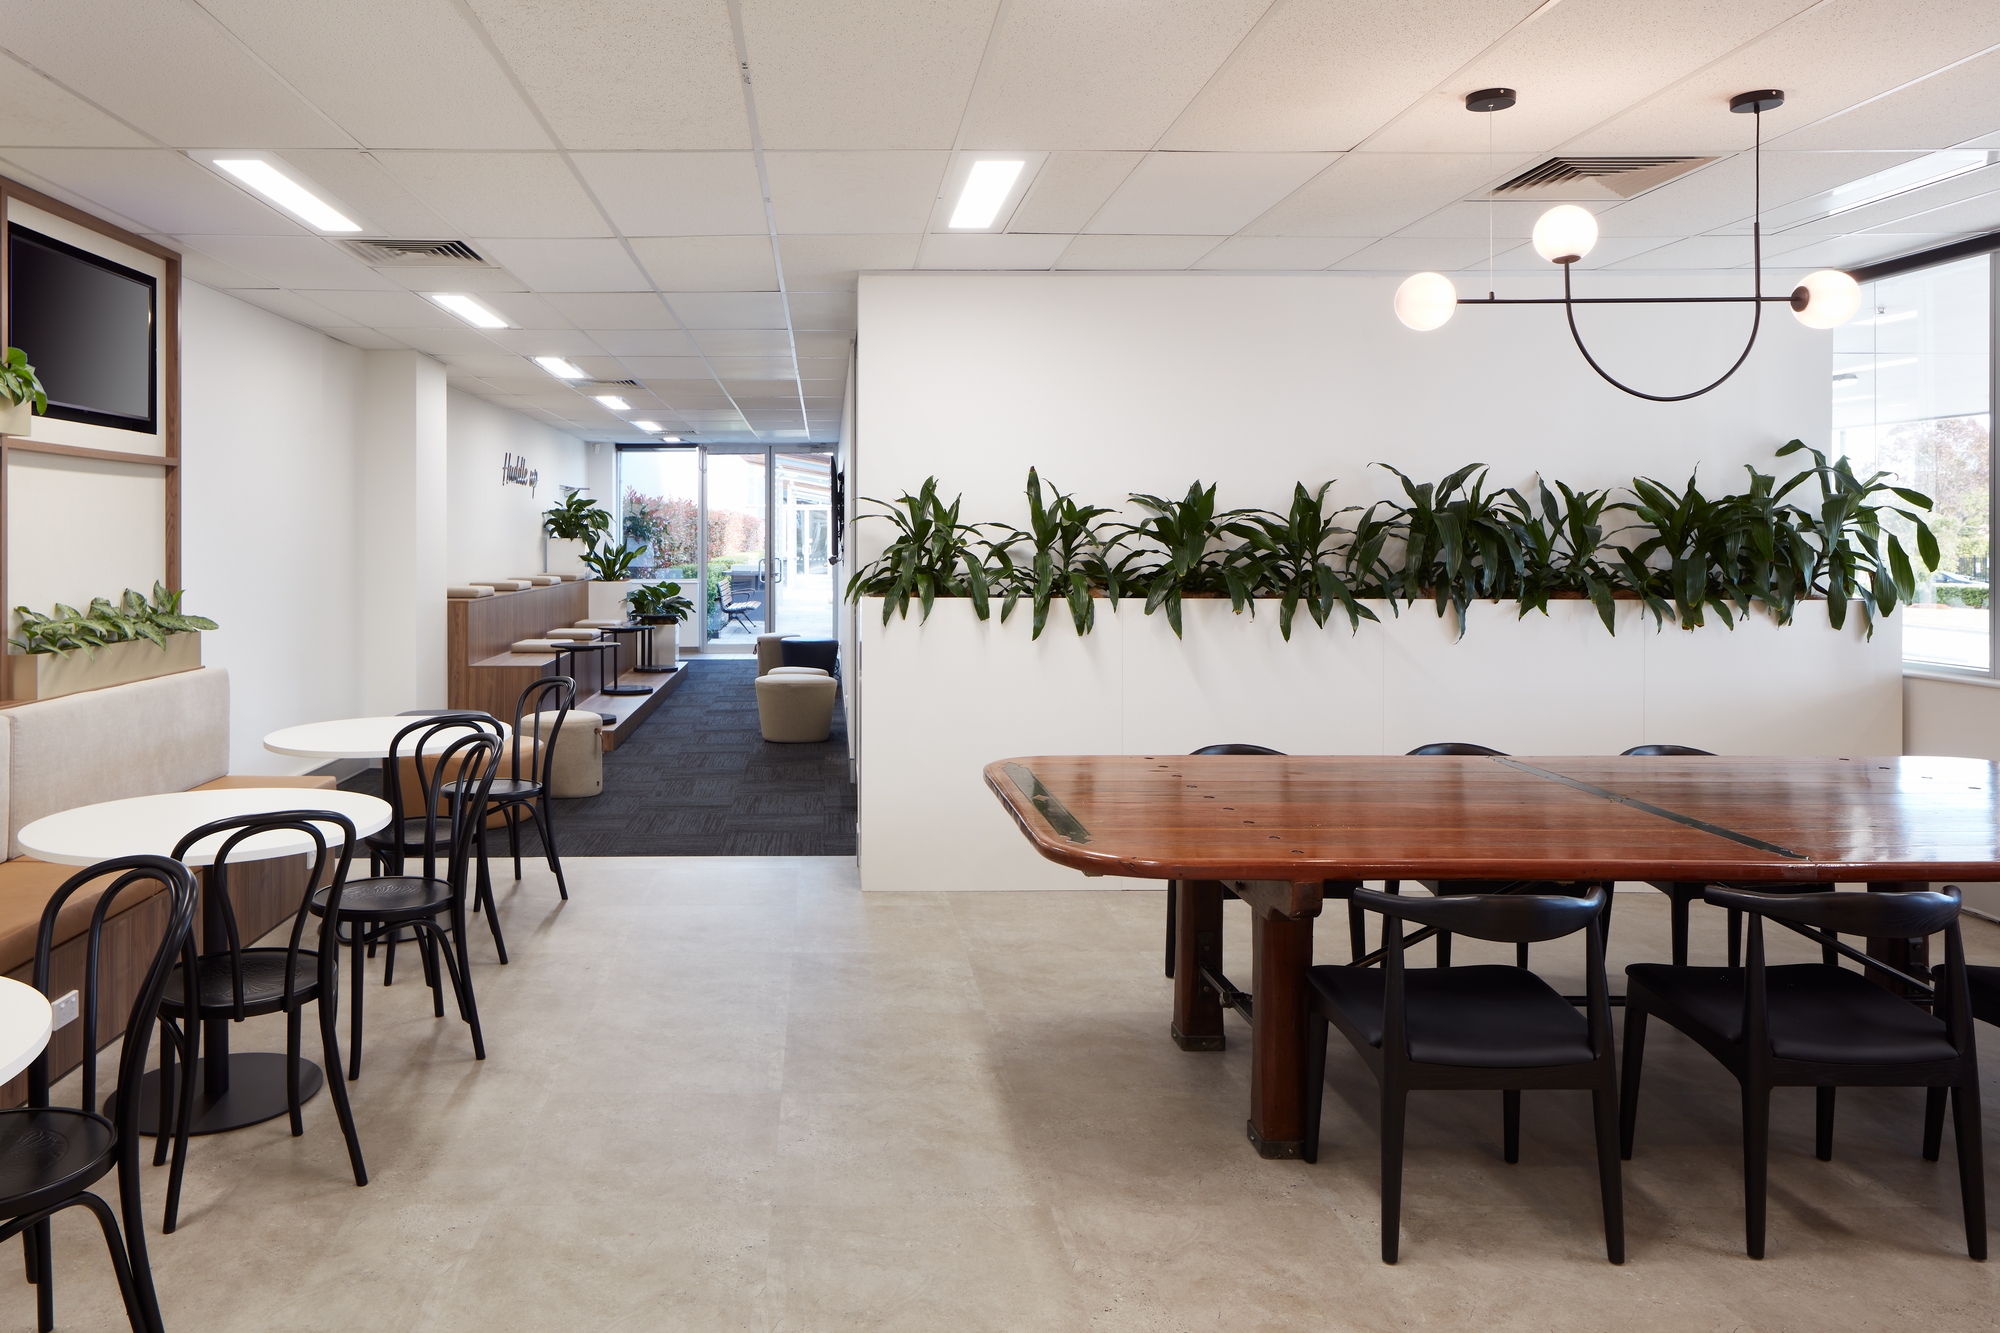 图片[6]|Manassen Foods澳大利亚办事处-悉尼|ART-Arrakis | 建筑室内设计的创新与灵感